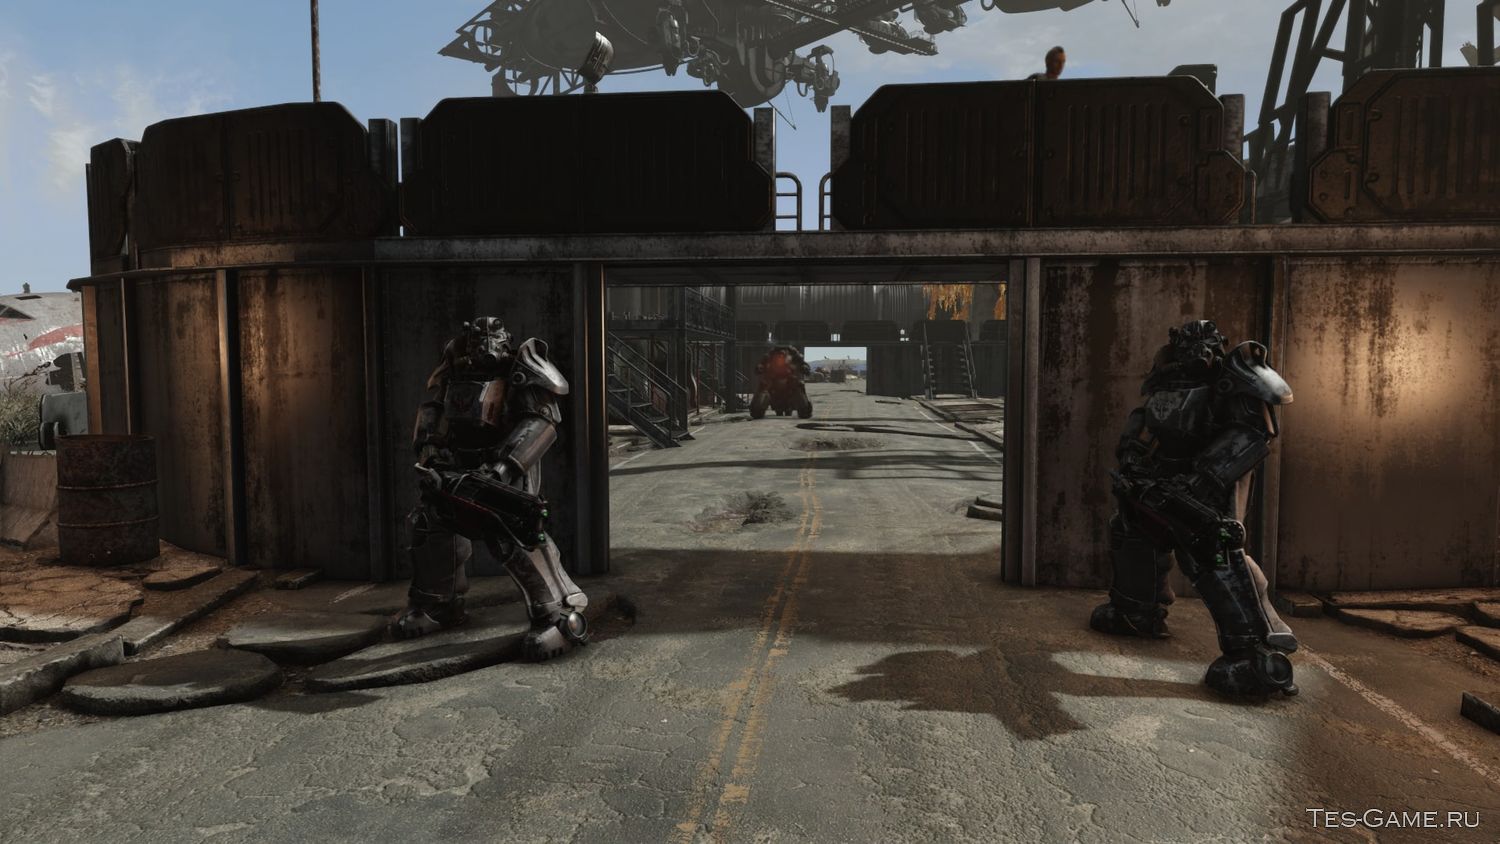 Fallout 4 аэропорт братства стали (119) фото